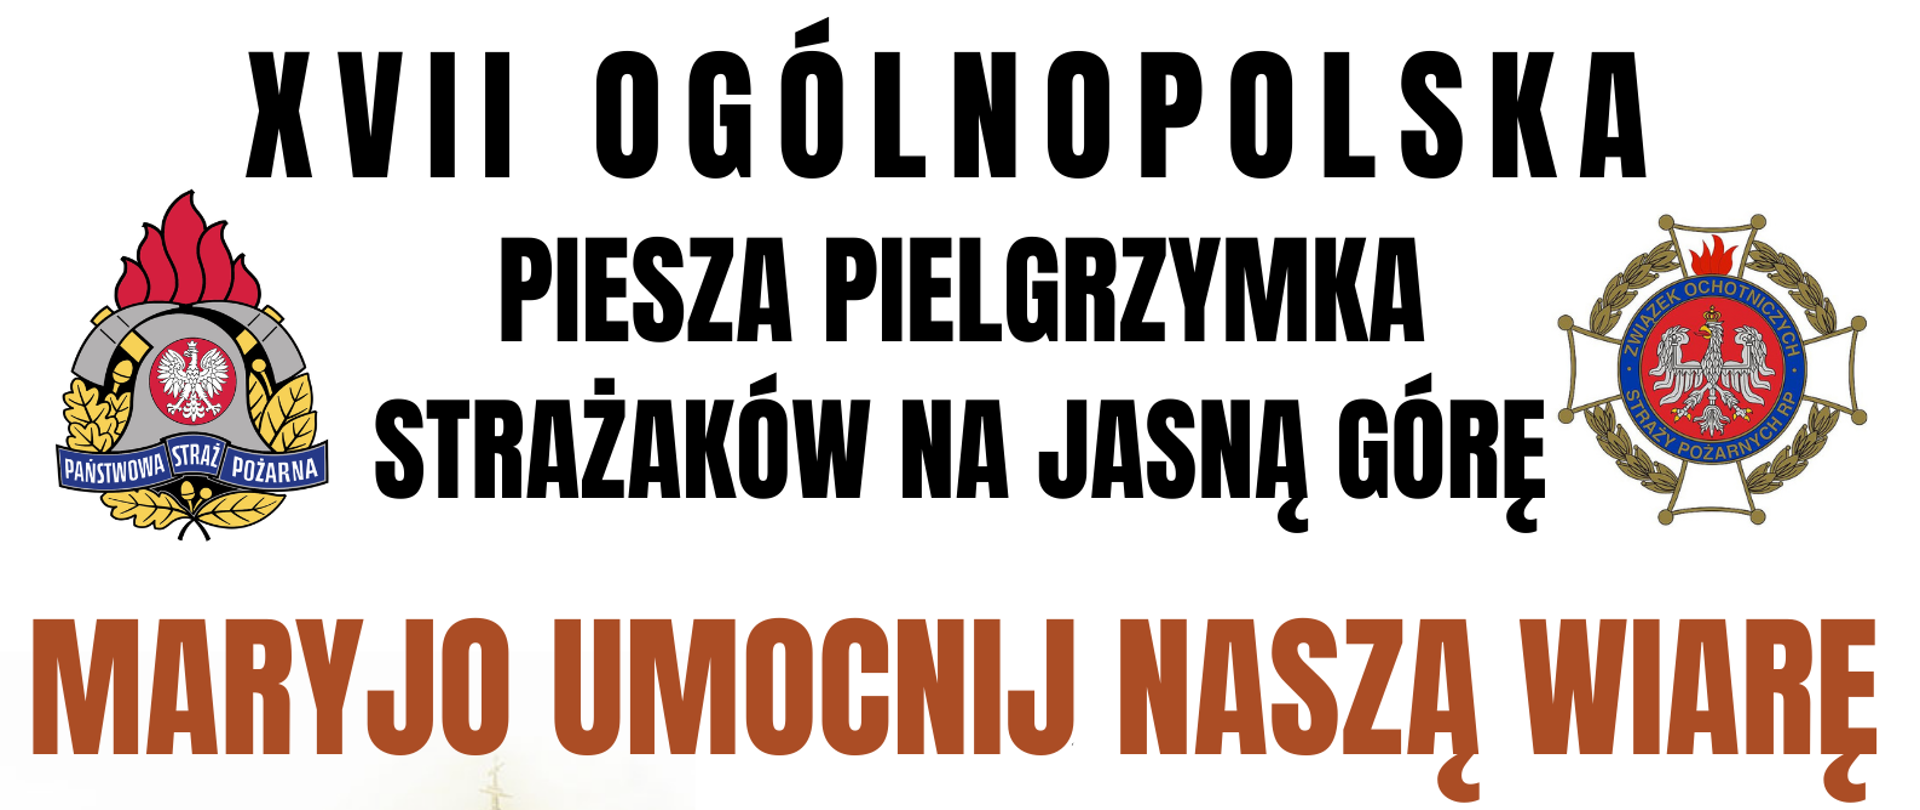 Plakat informacyjny XVII Ogólnopolska Piesza Pielgrzymka Strażaków na Jasną Górę